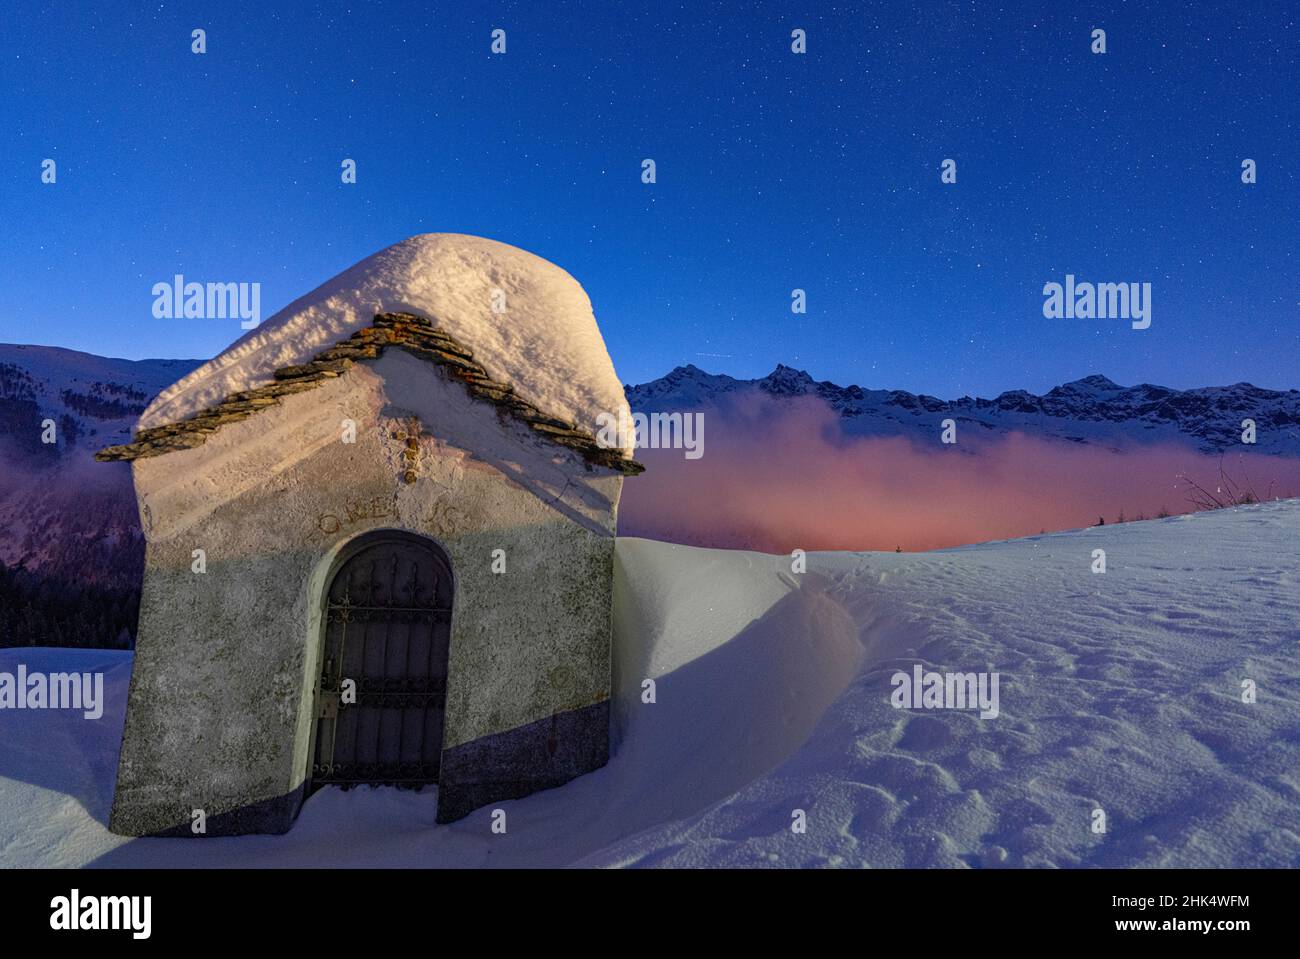 Petite chapelle couverte de neige dans la nuit d'hiver étoilée, Andossi, Madesimo, Valchiavenna, Valtellina,Lombardie, Italie, Europe Banque D'Images